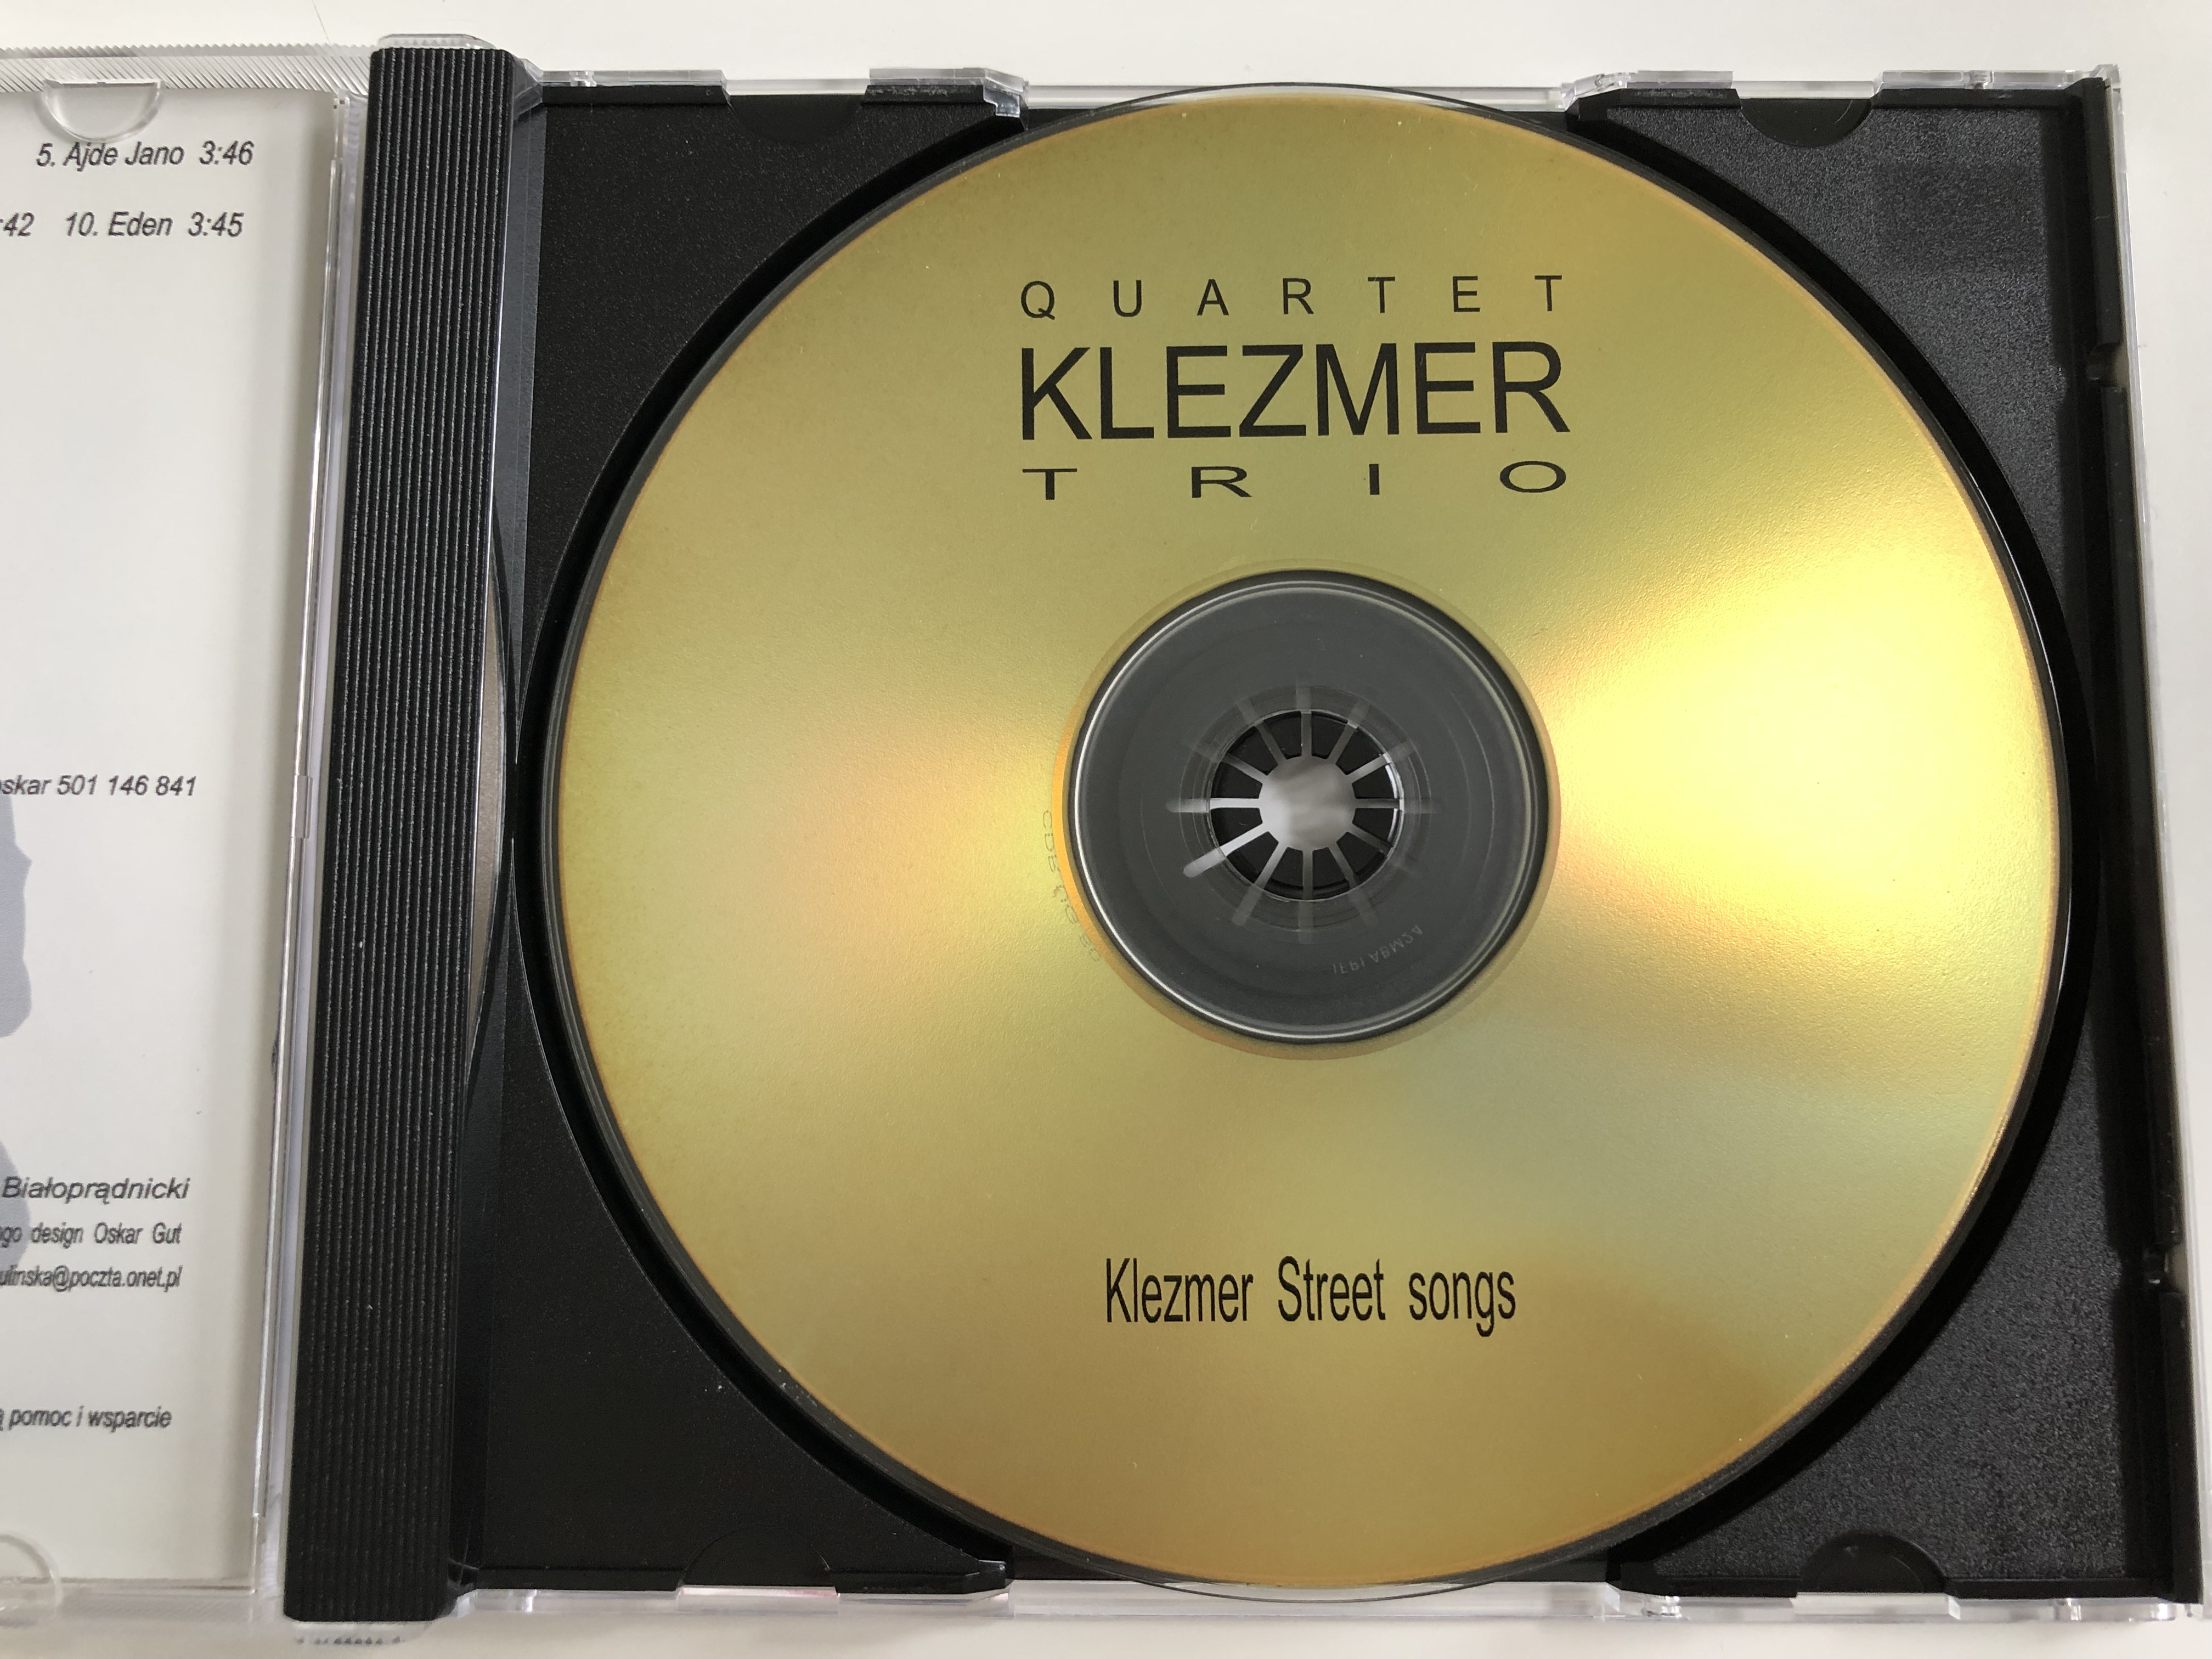 quartet-klezmer-trio-klezmer-street-songs-audio-cd-7-.jpg